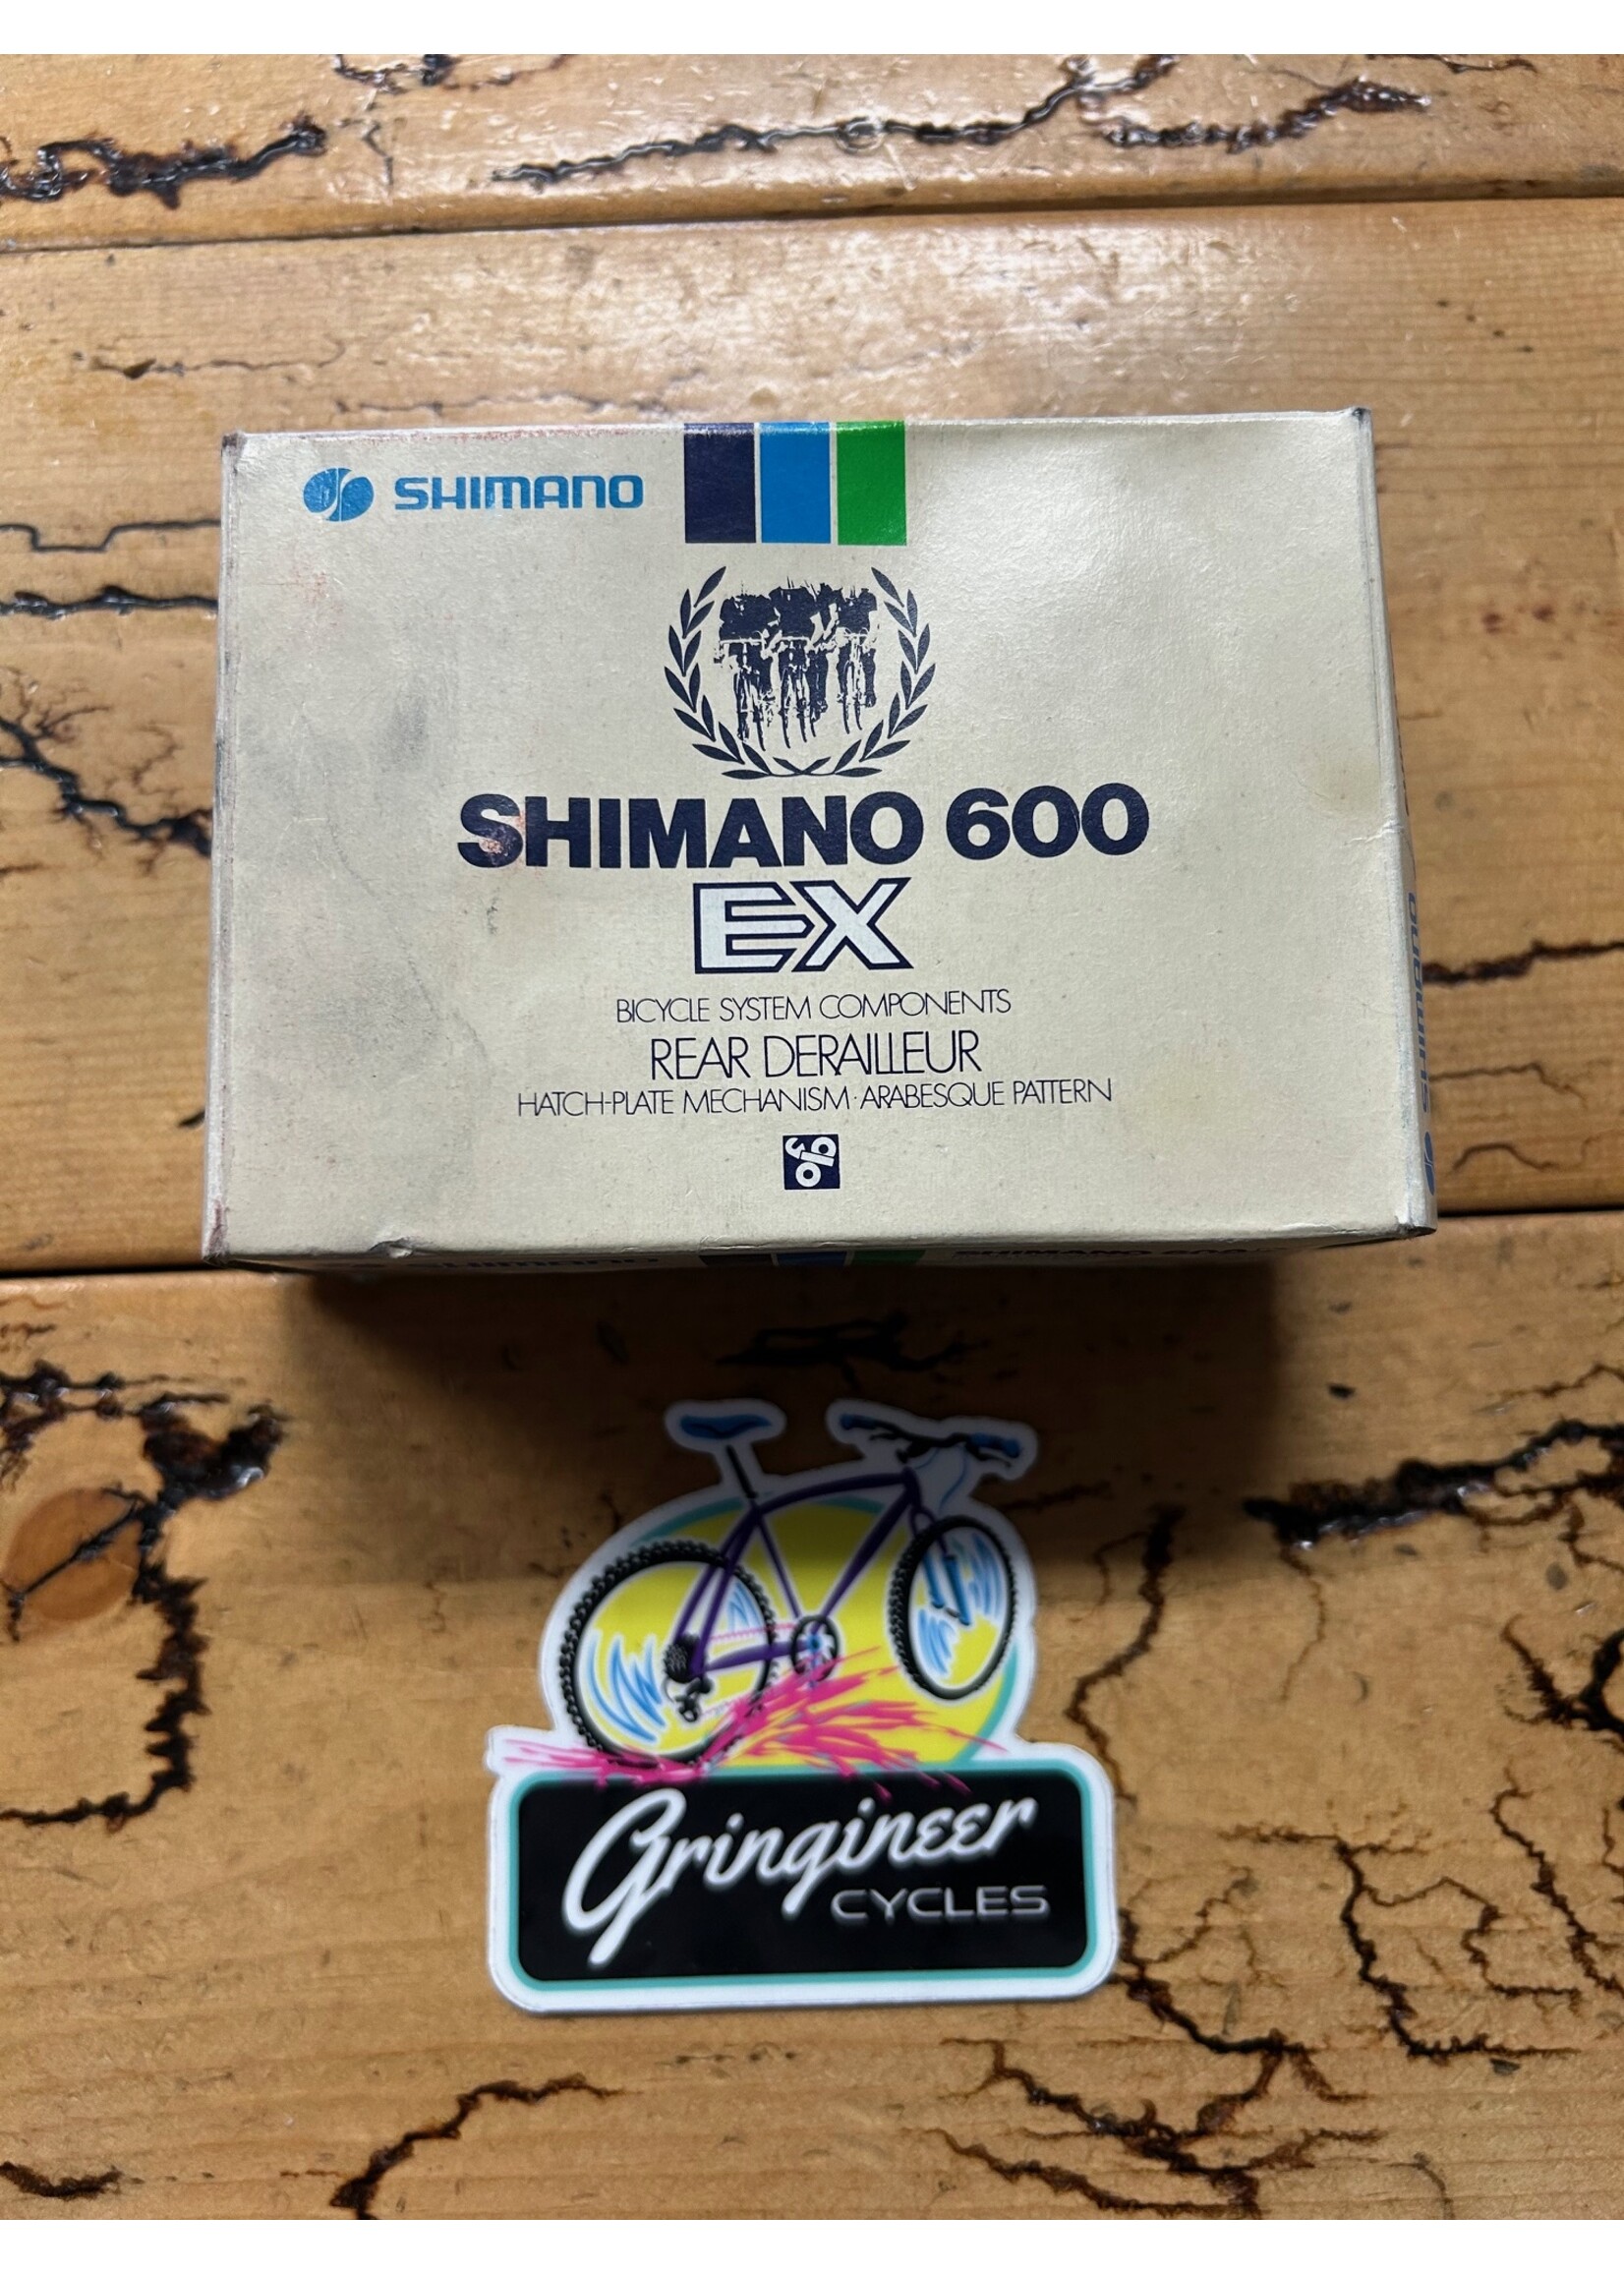 SHIMANO Shimano 600 EX Arabesque Long Cage RD-6210 Rear Derialleur NOS